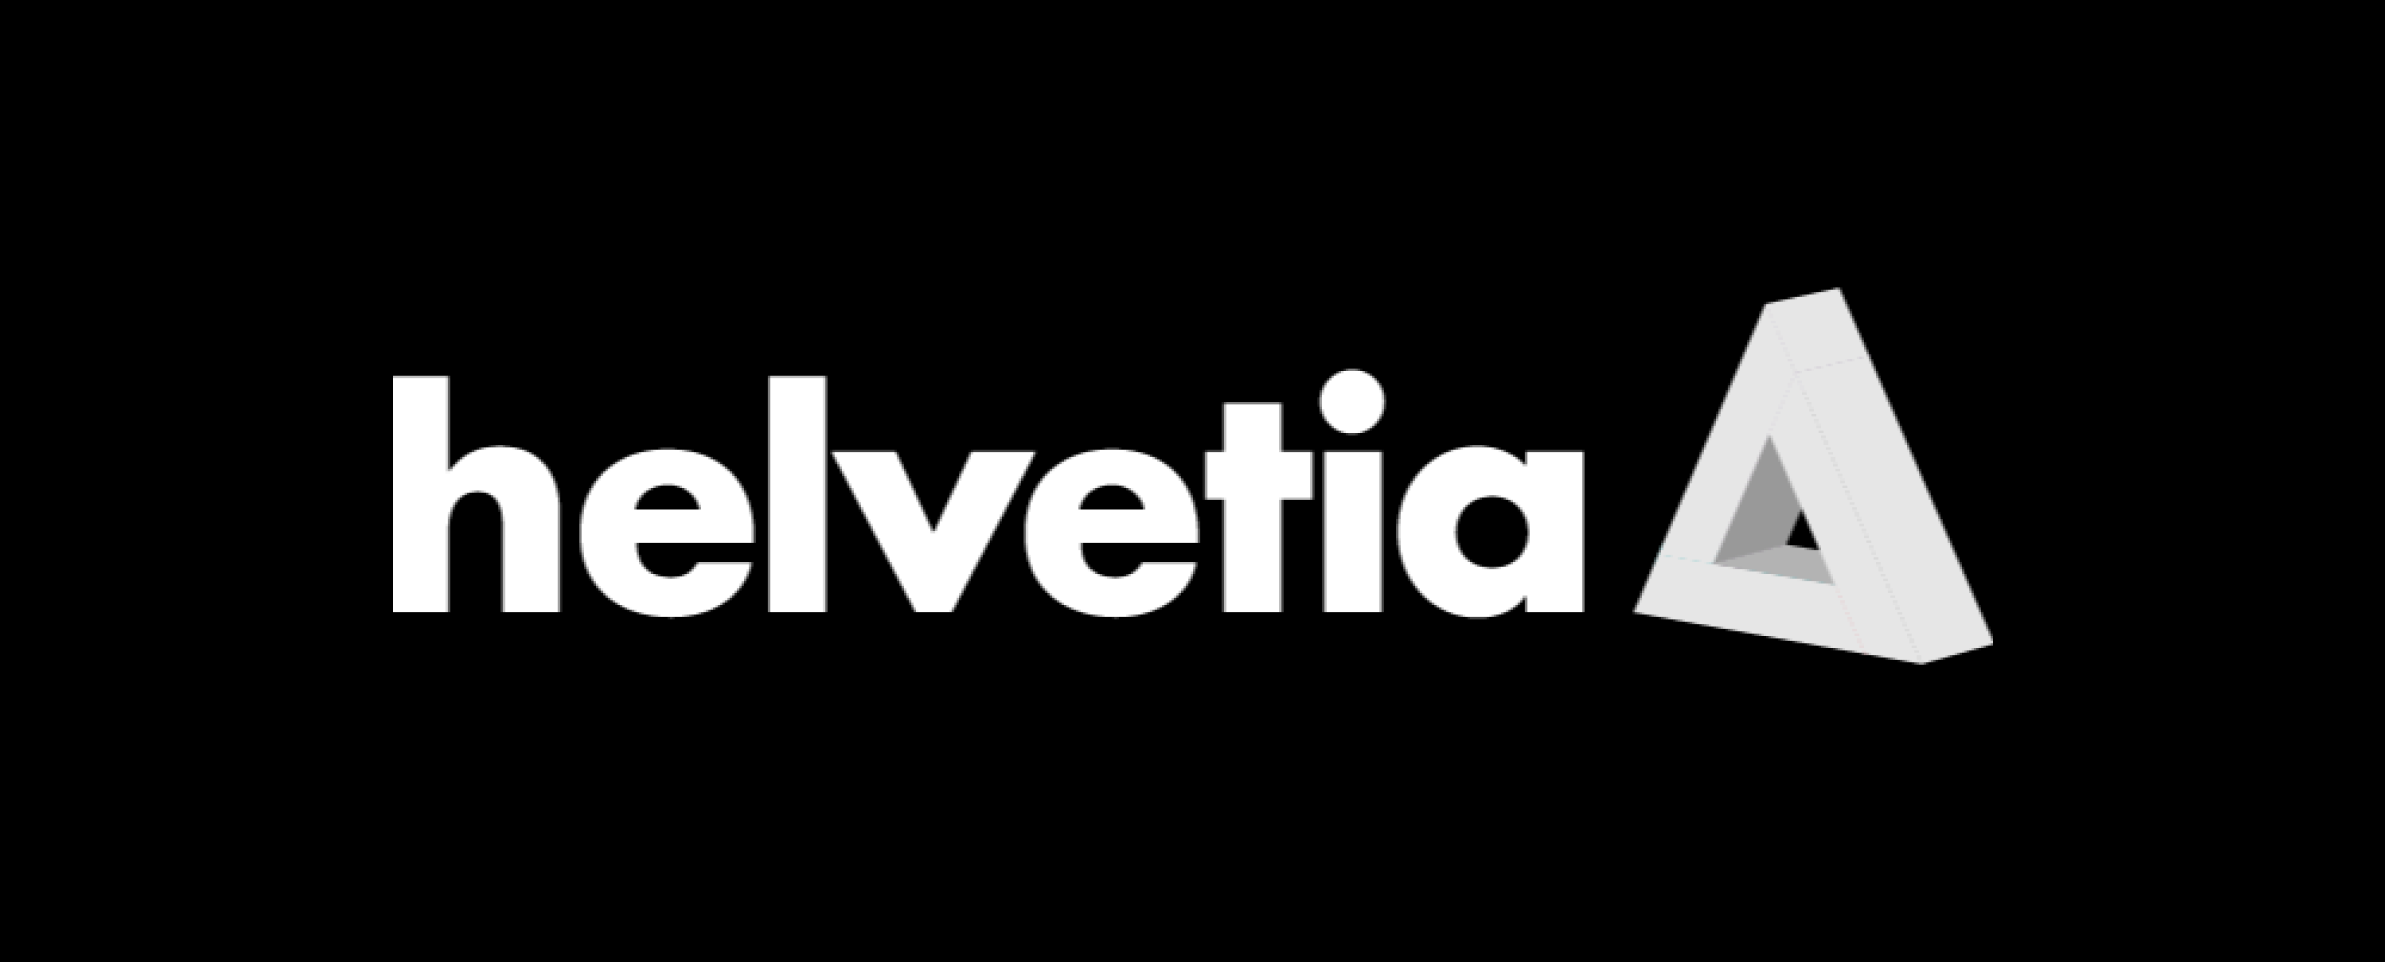 EventP Helvetia Venture Fund